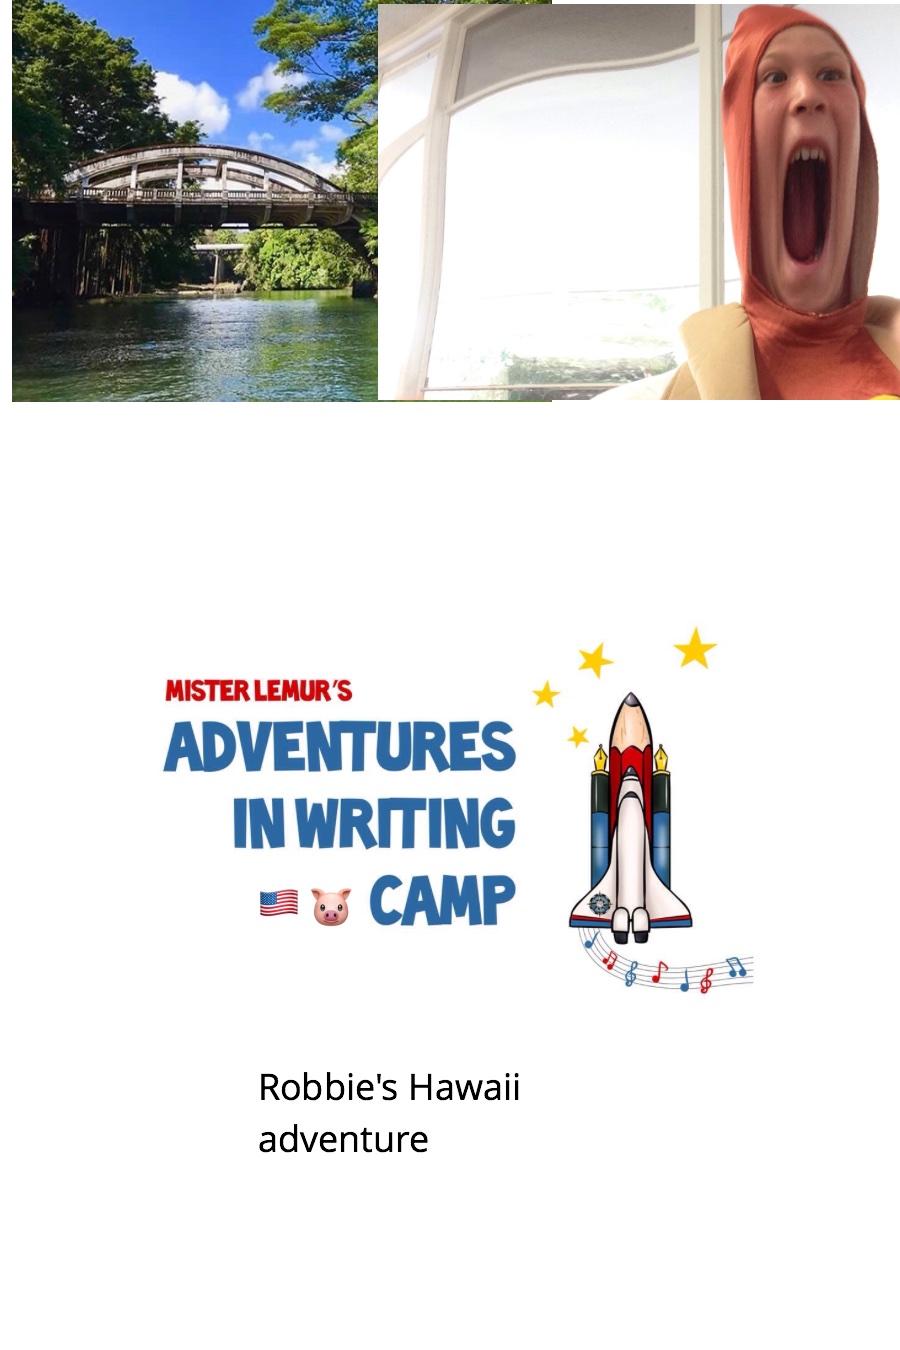 Robbie’s Hawaii Adventure by Robert Robbie S